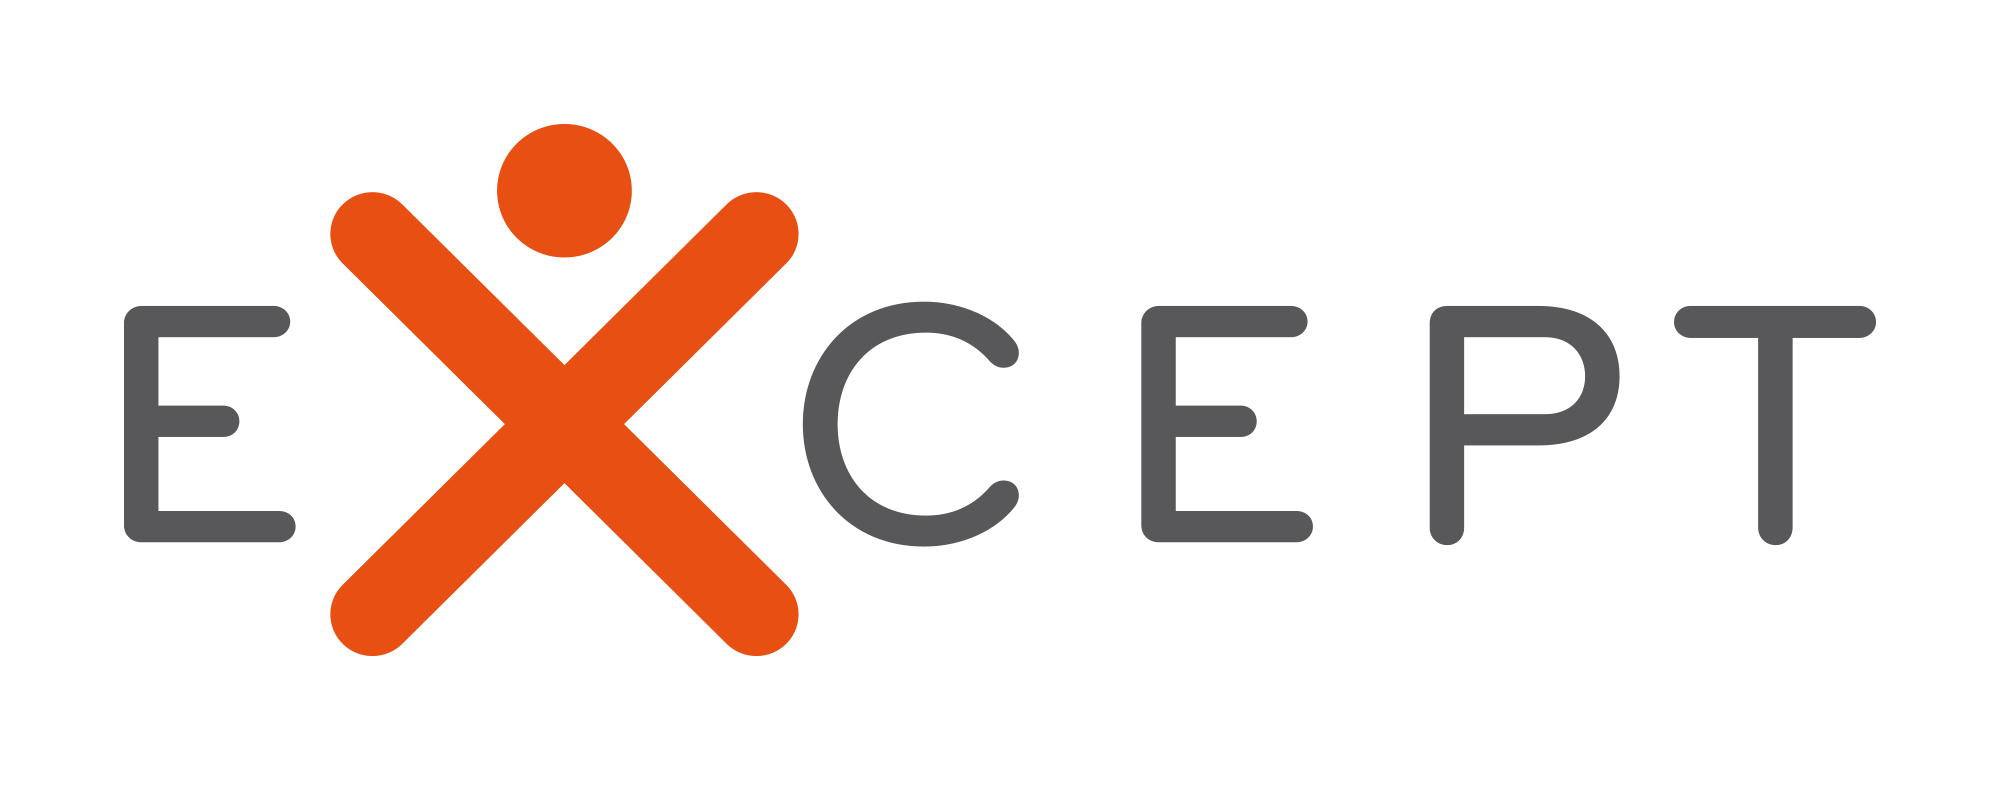 EXCEPT logo orange